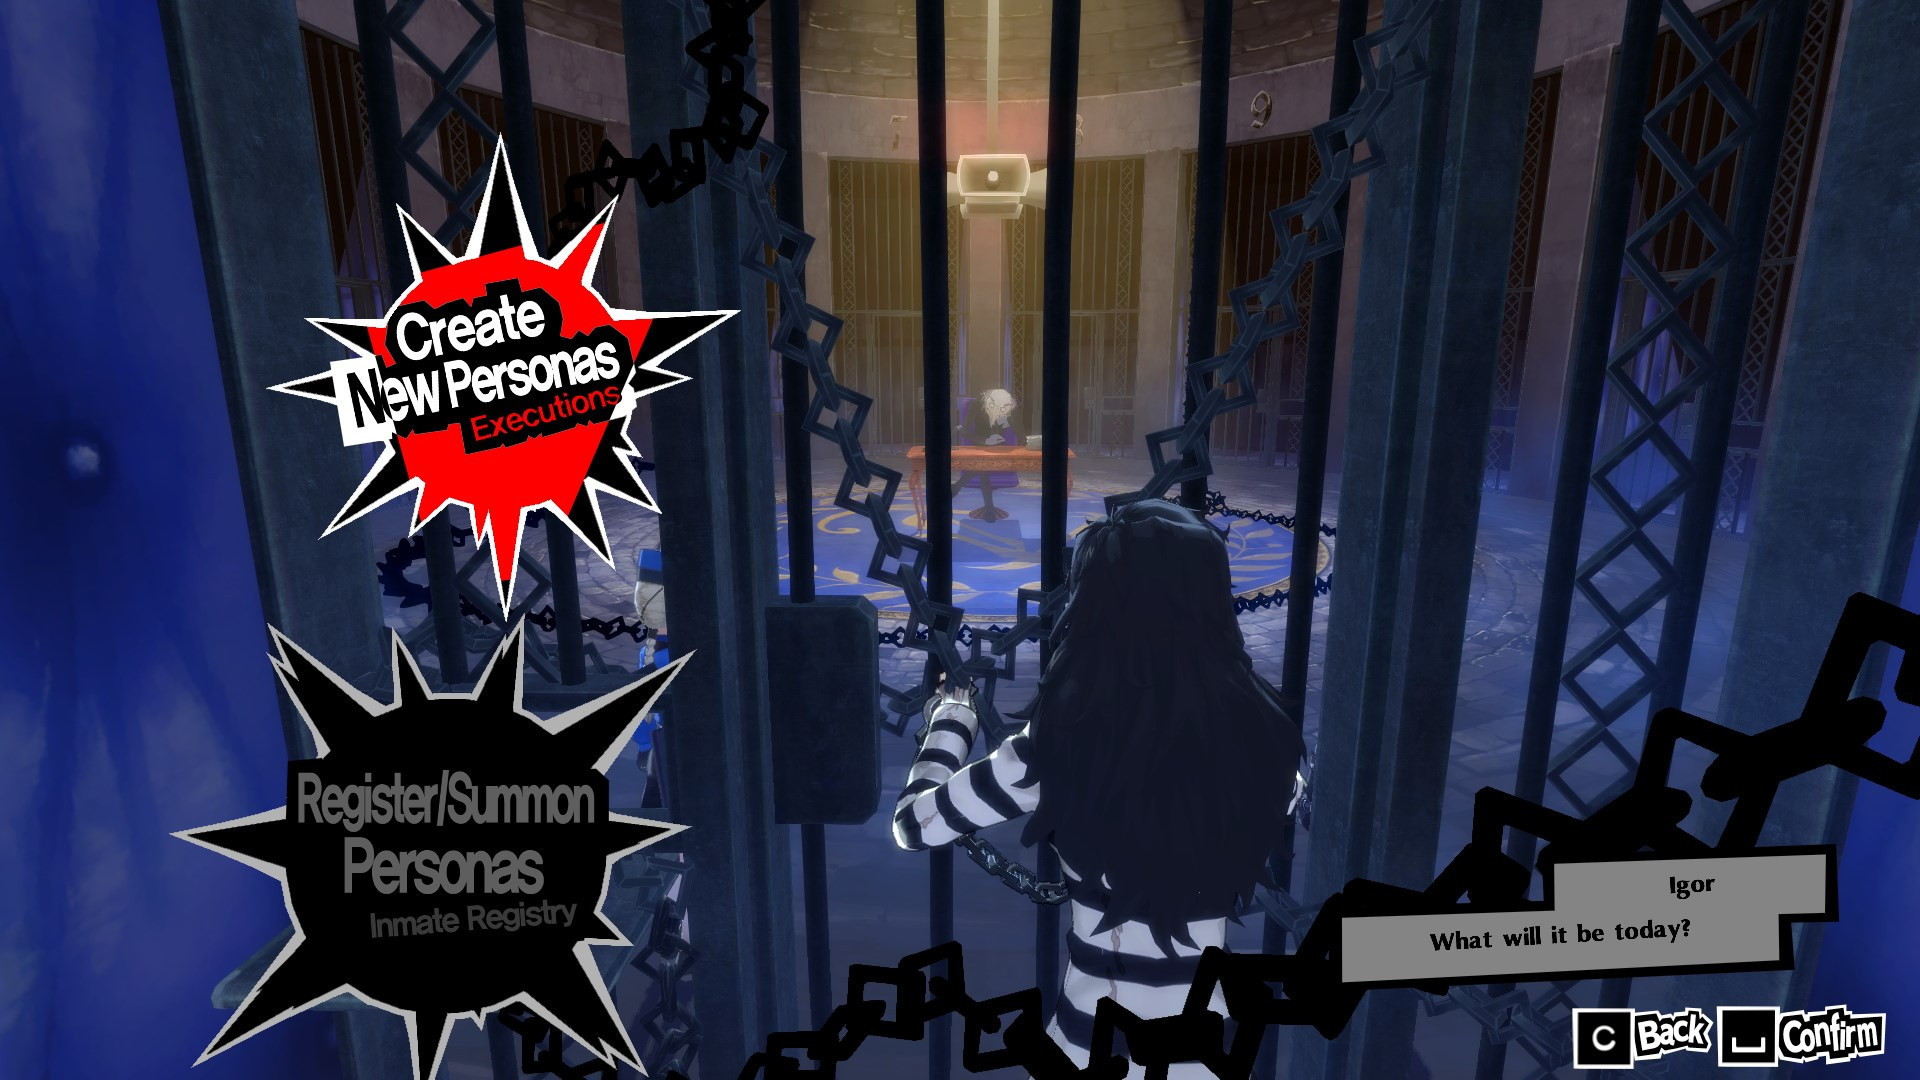 Image de Persona 5 Royal modifiée pour que le protagoniste Joker soit une femme